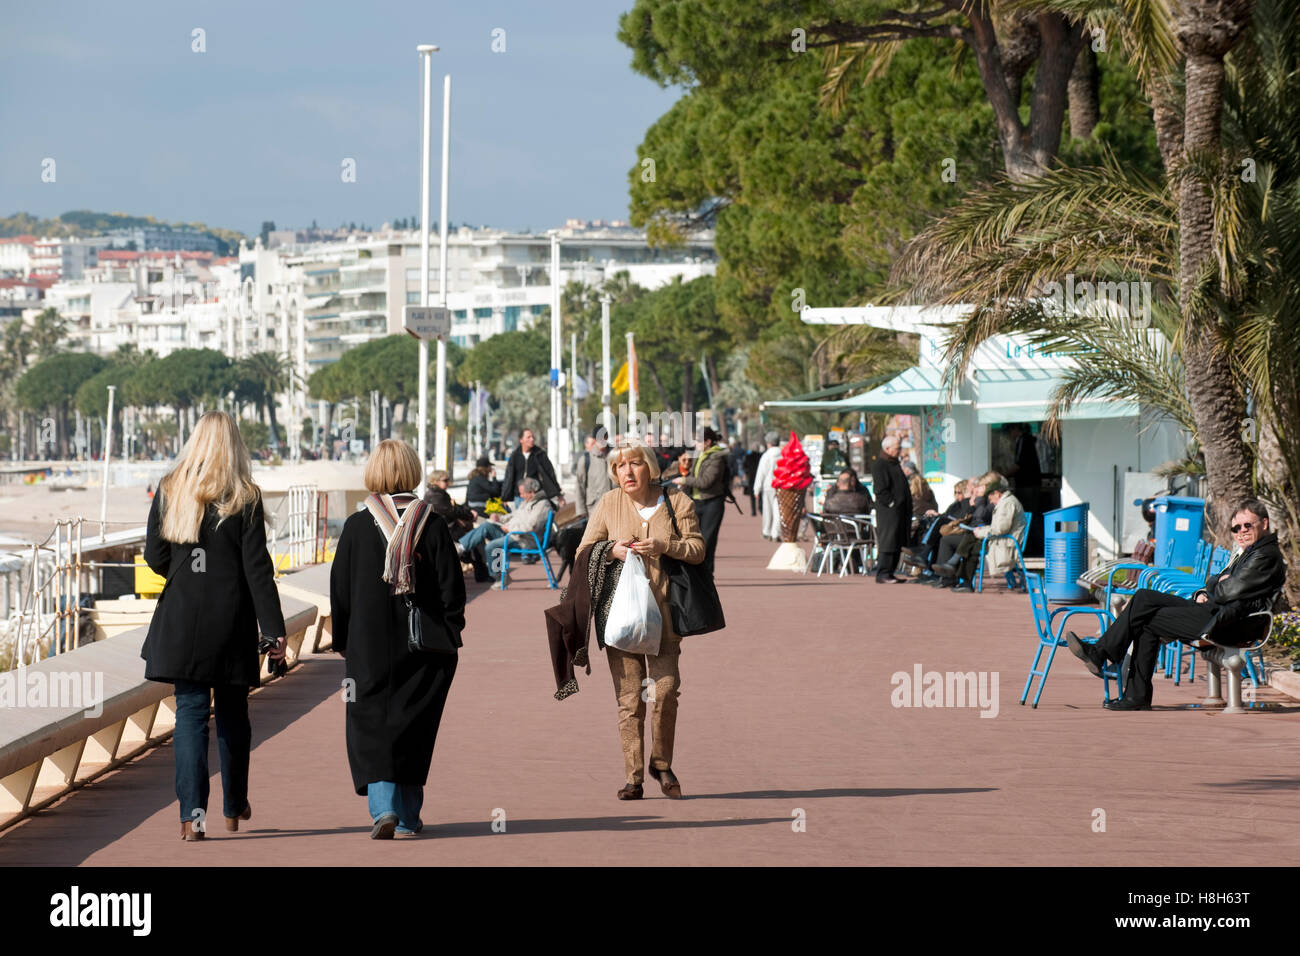 Frankreich, Cote d Azur, Cannes, Boulevard de la Croisette, elegante Flanierpromenade Stock Photo